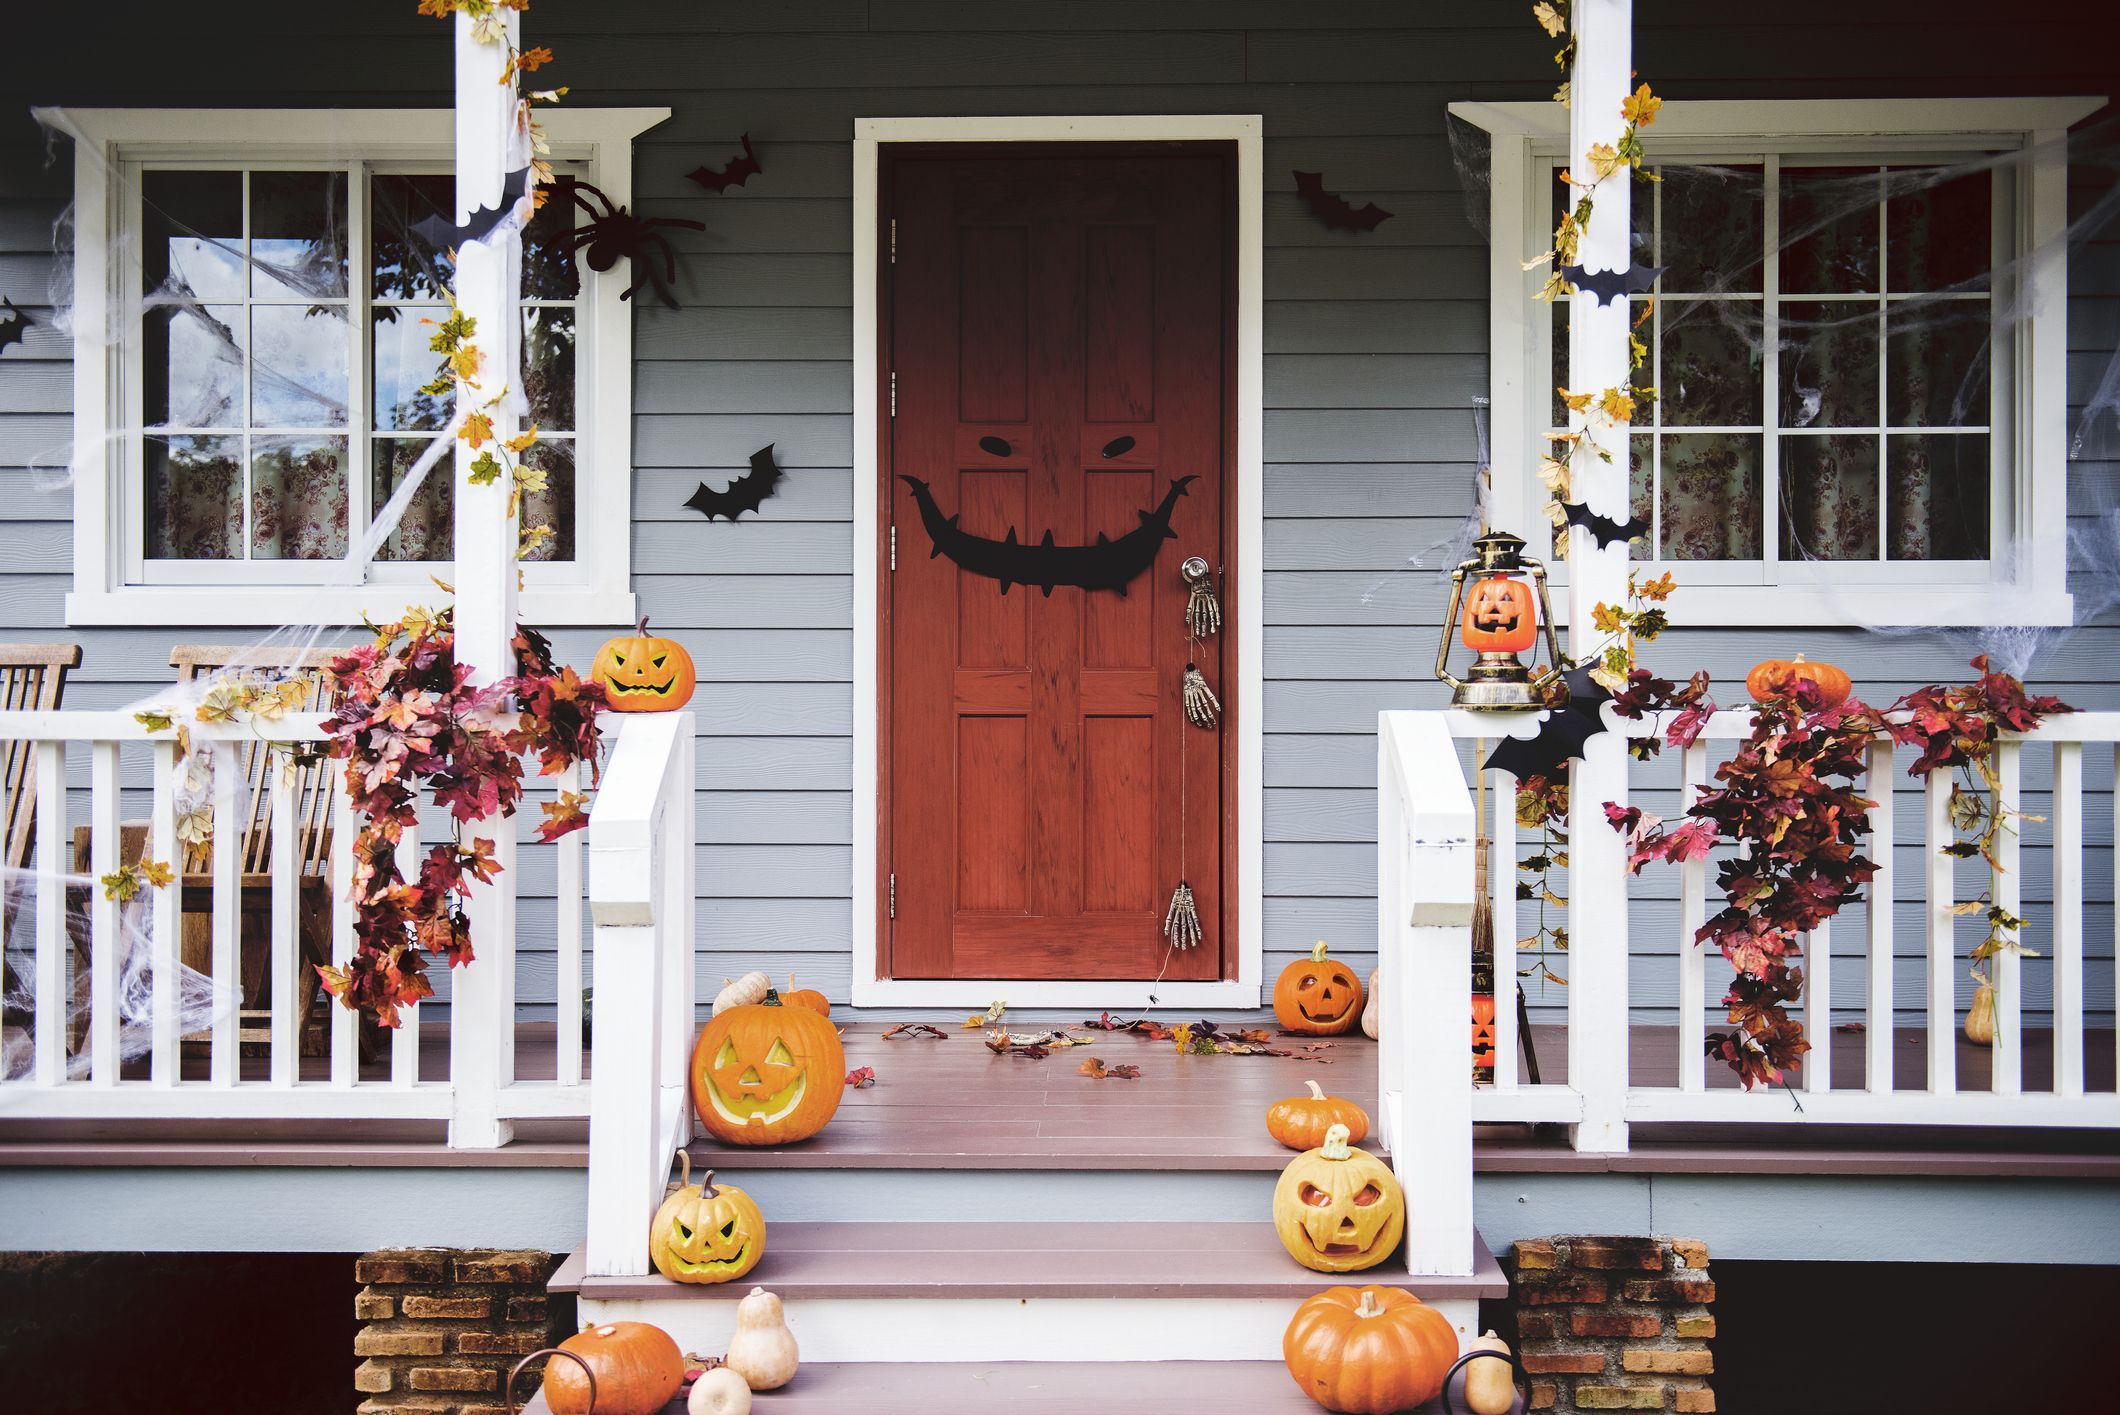 Halloween spirit are the door and window